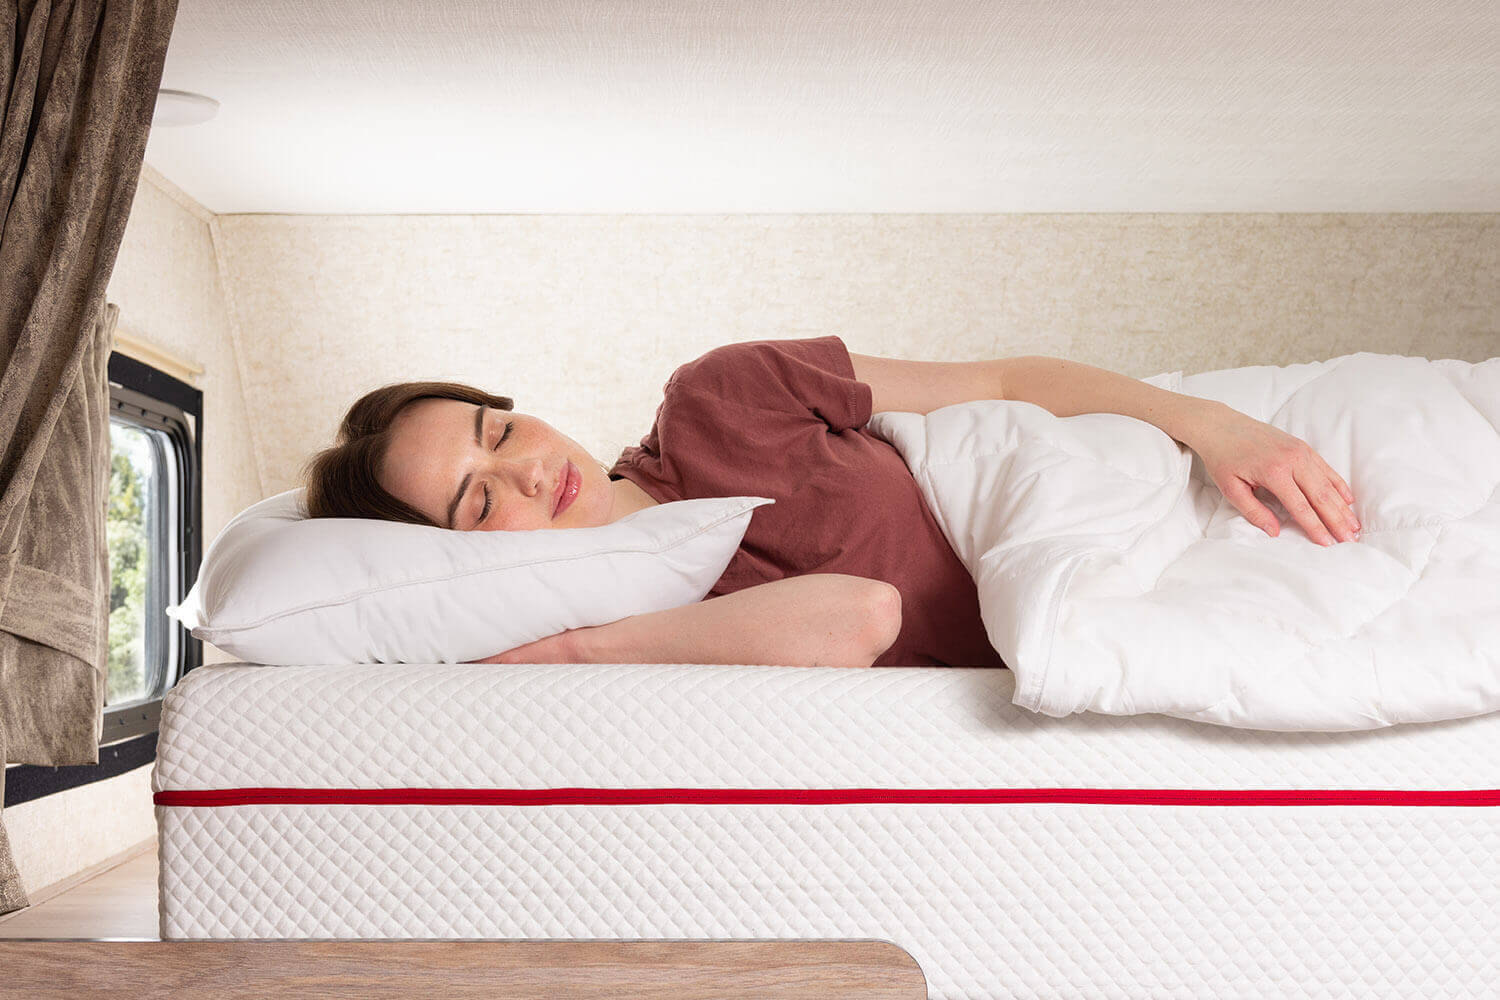 Woman sleeping inside an RV on a Douglas mattress